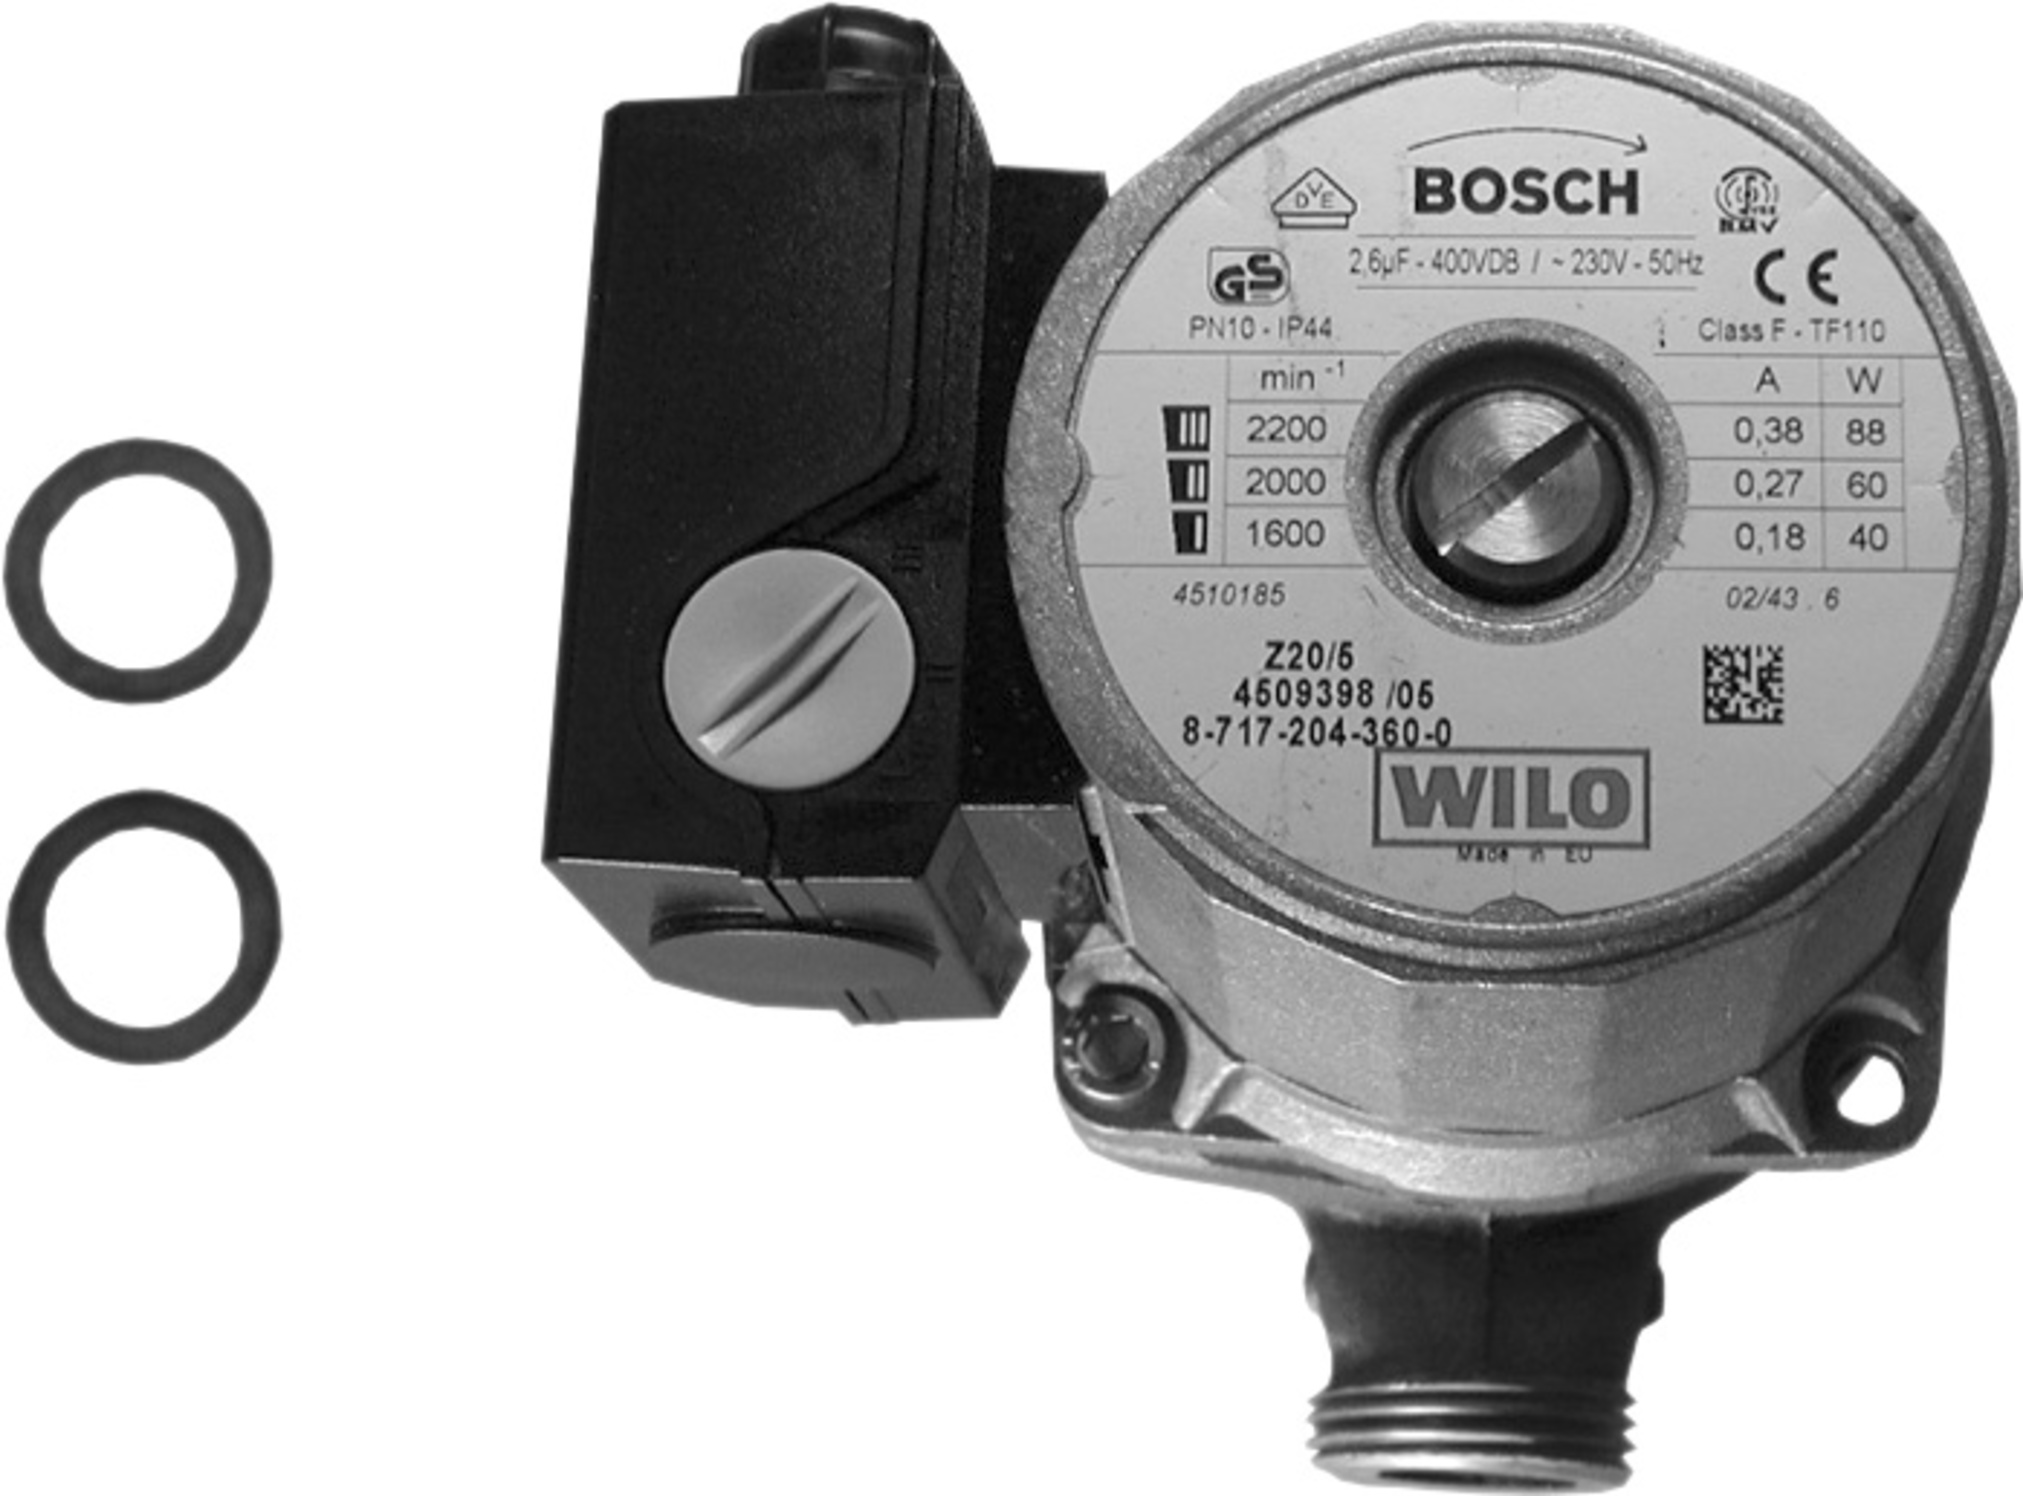 Bosch Junkers Pumpe - Speicher Brennwertgeräte